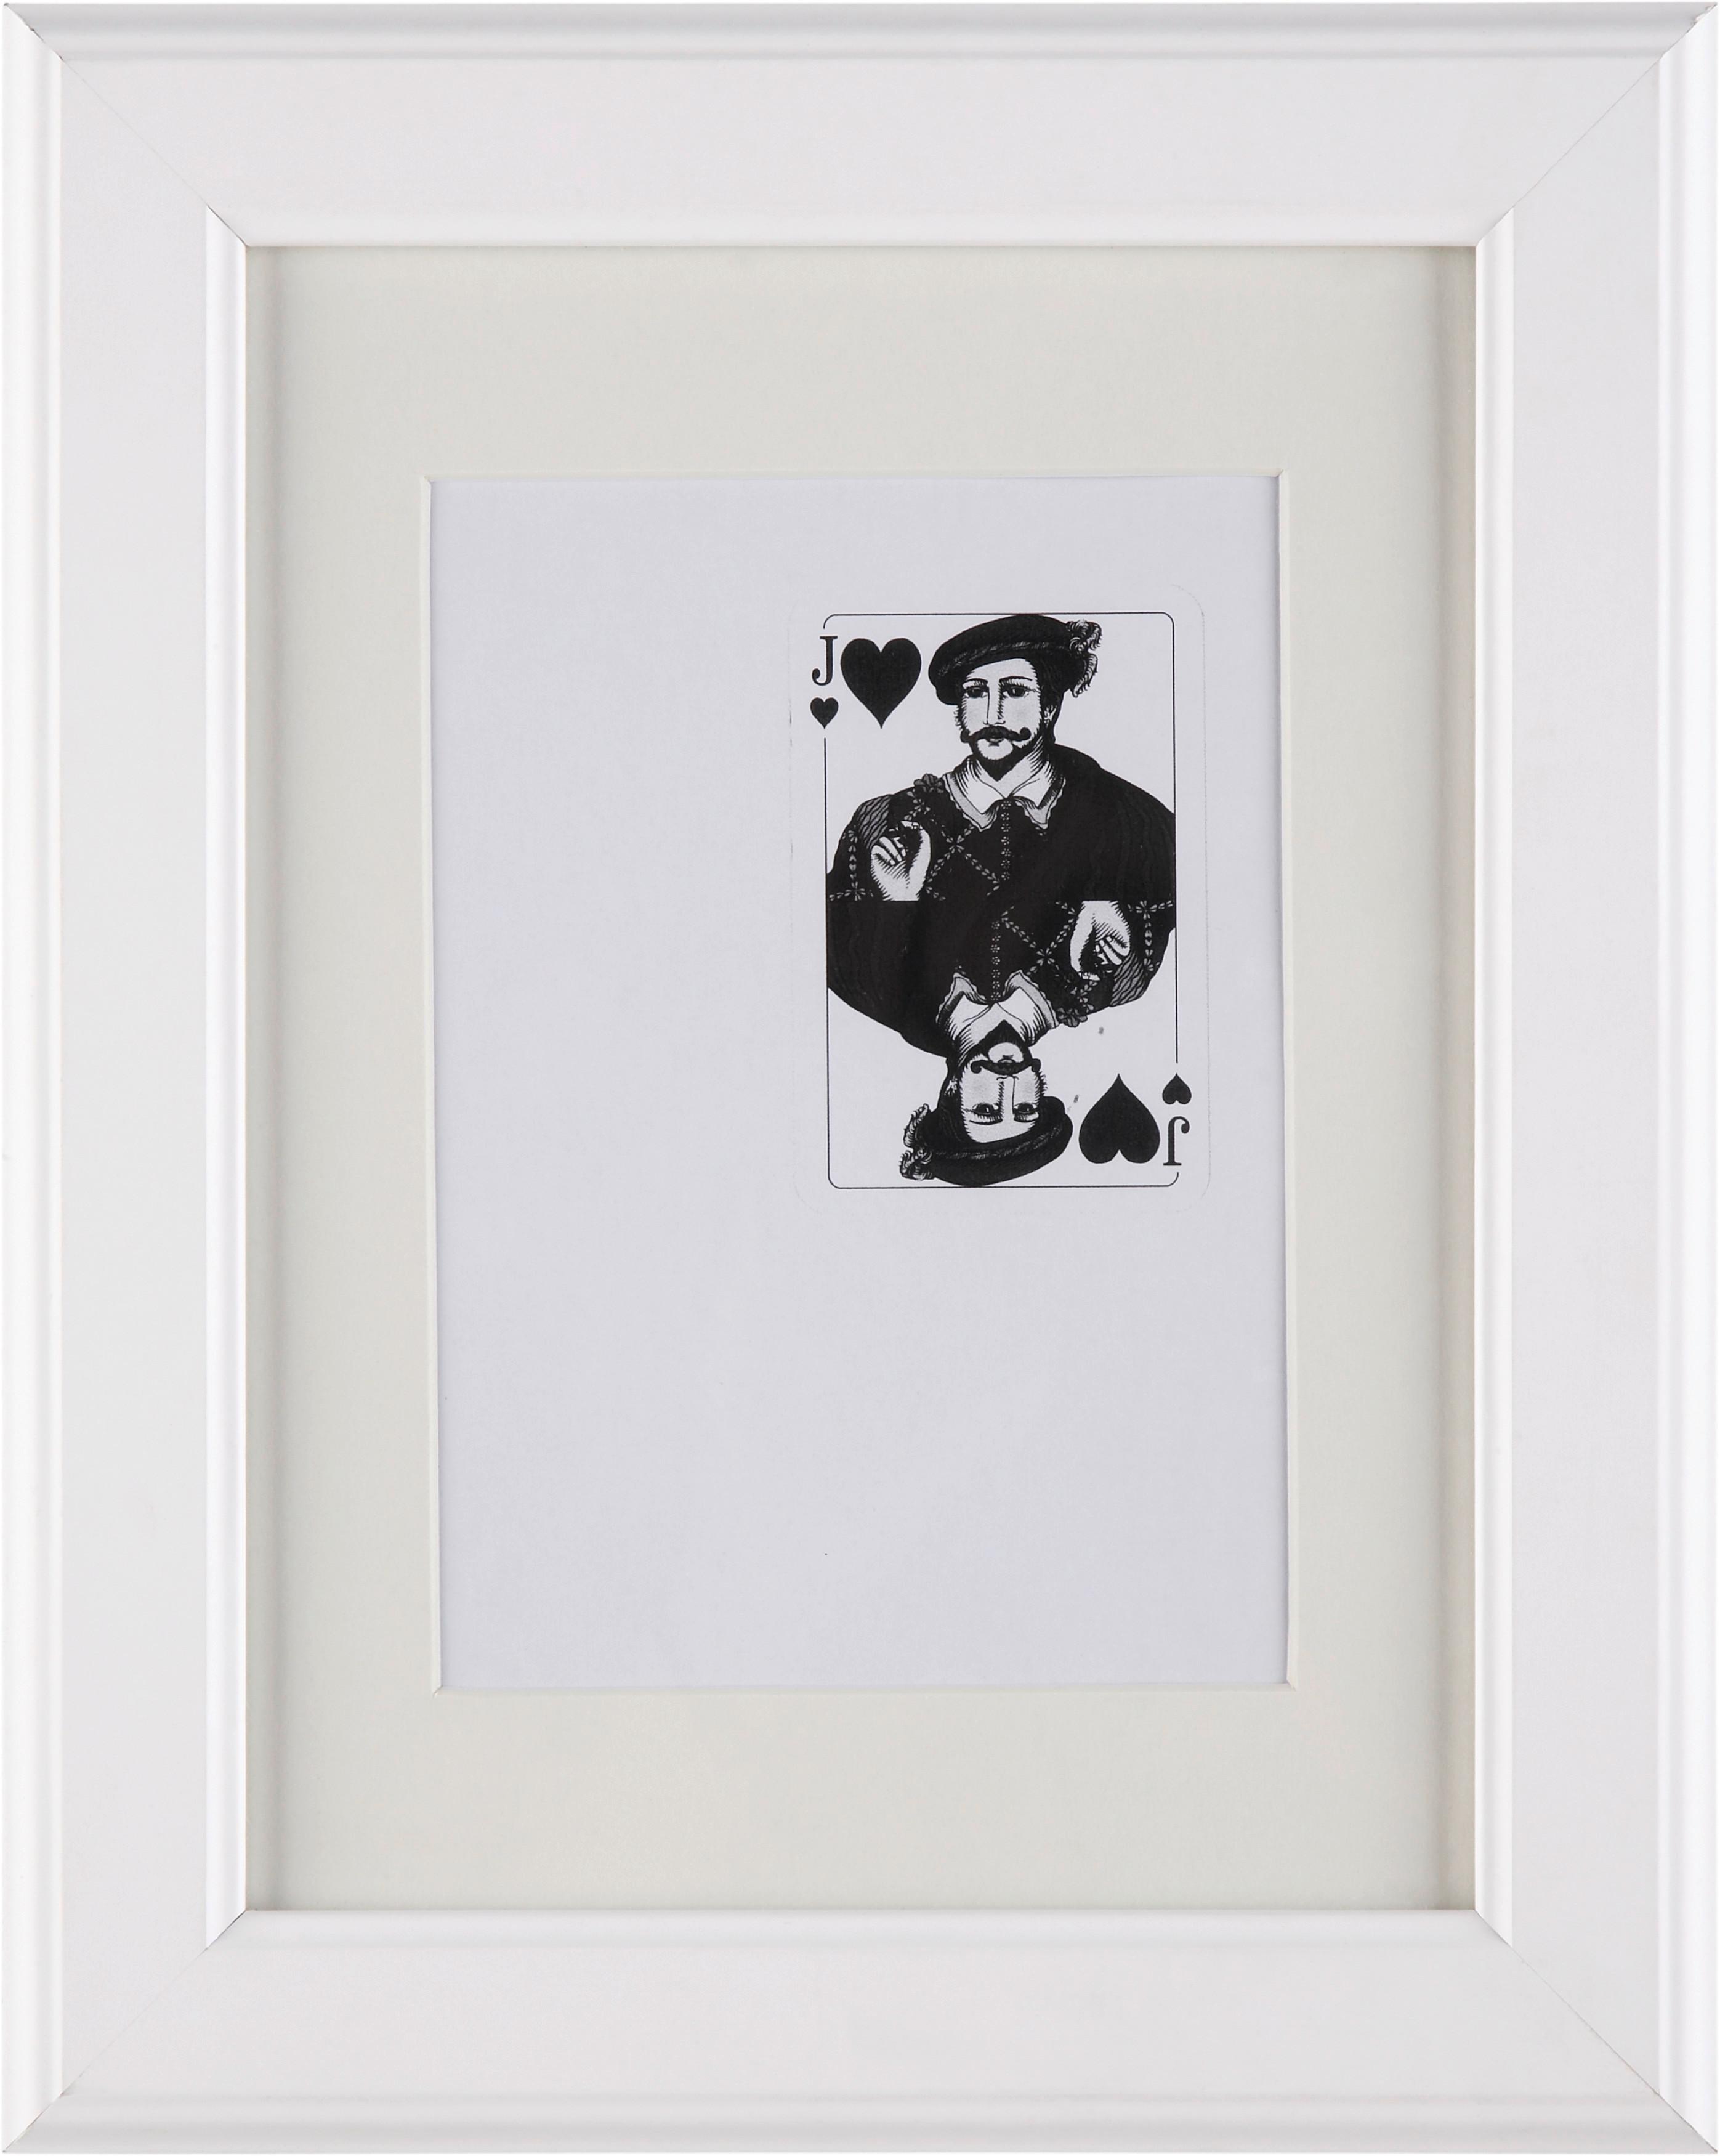 Rám Na Obrazy Provence 18x24 Cm - bílá, Romantický / Rustikální, dřevo/sklo (18/24cm) - Modern Living